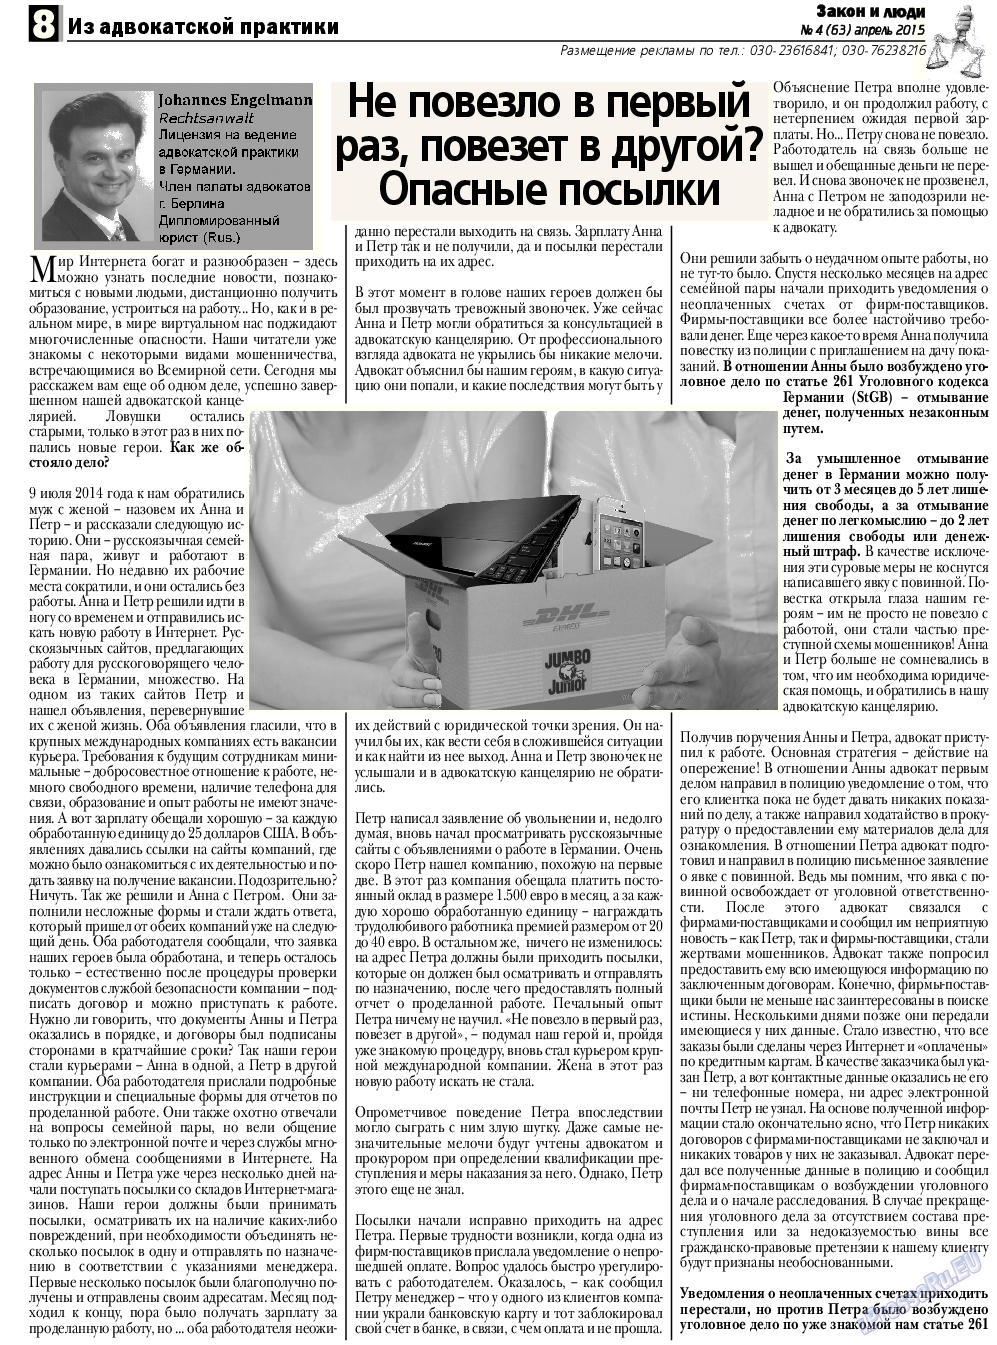 Закон и люди, газета. 2015 №4 стр.8